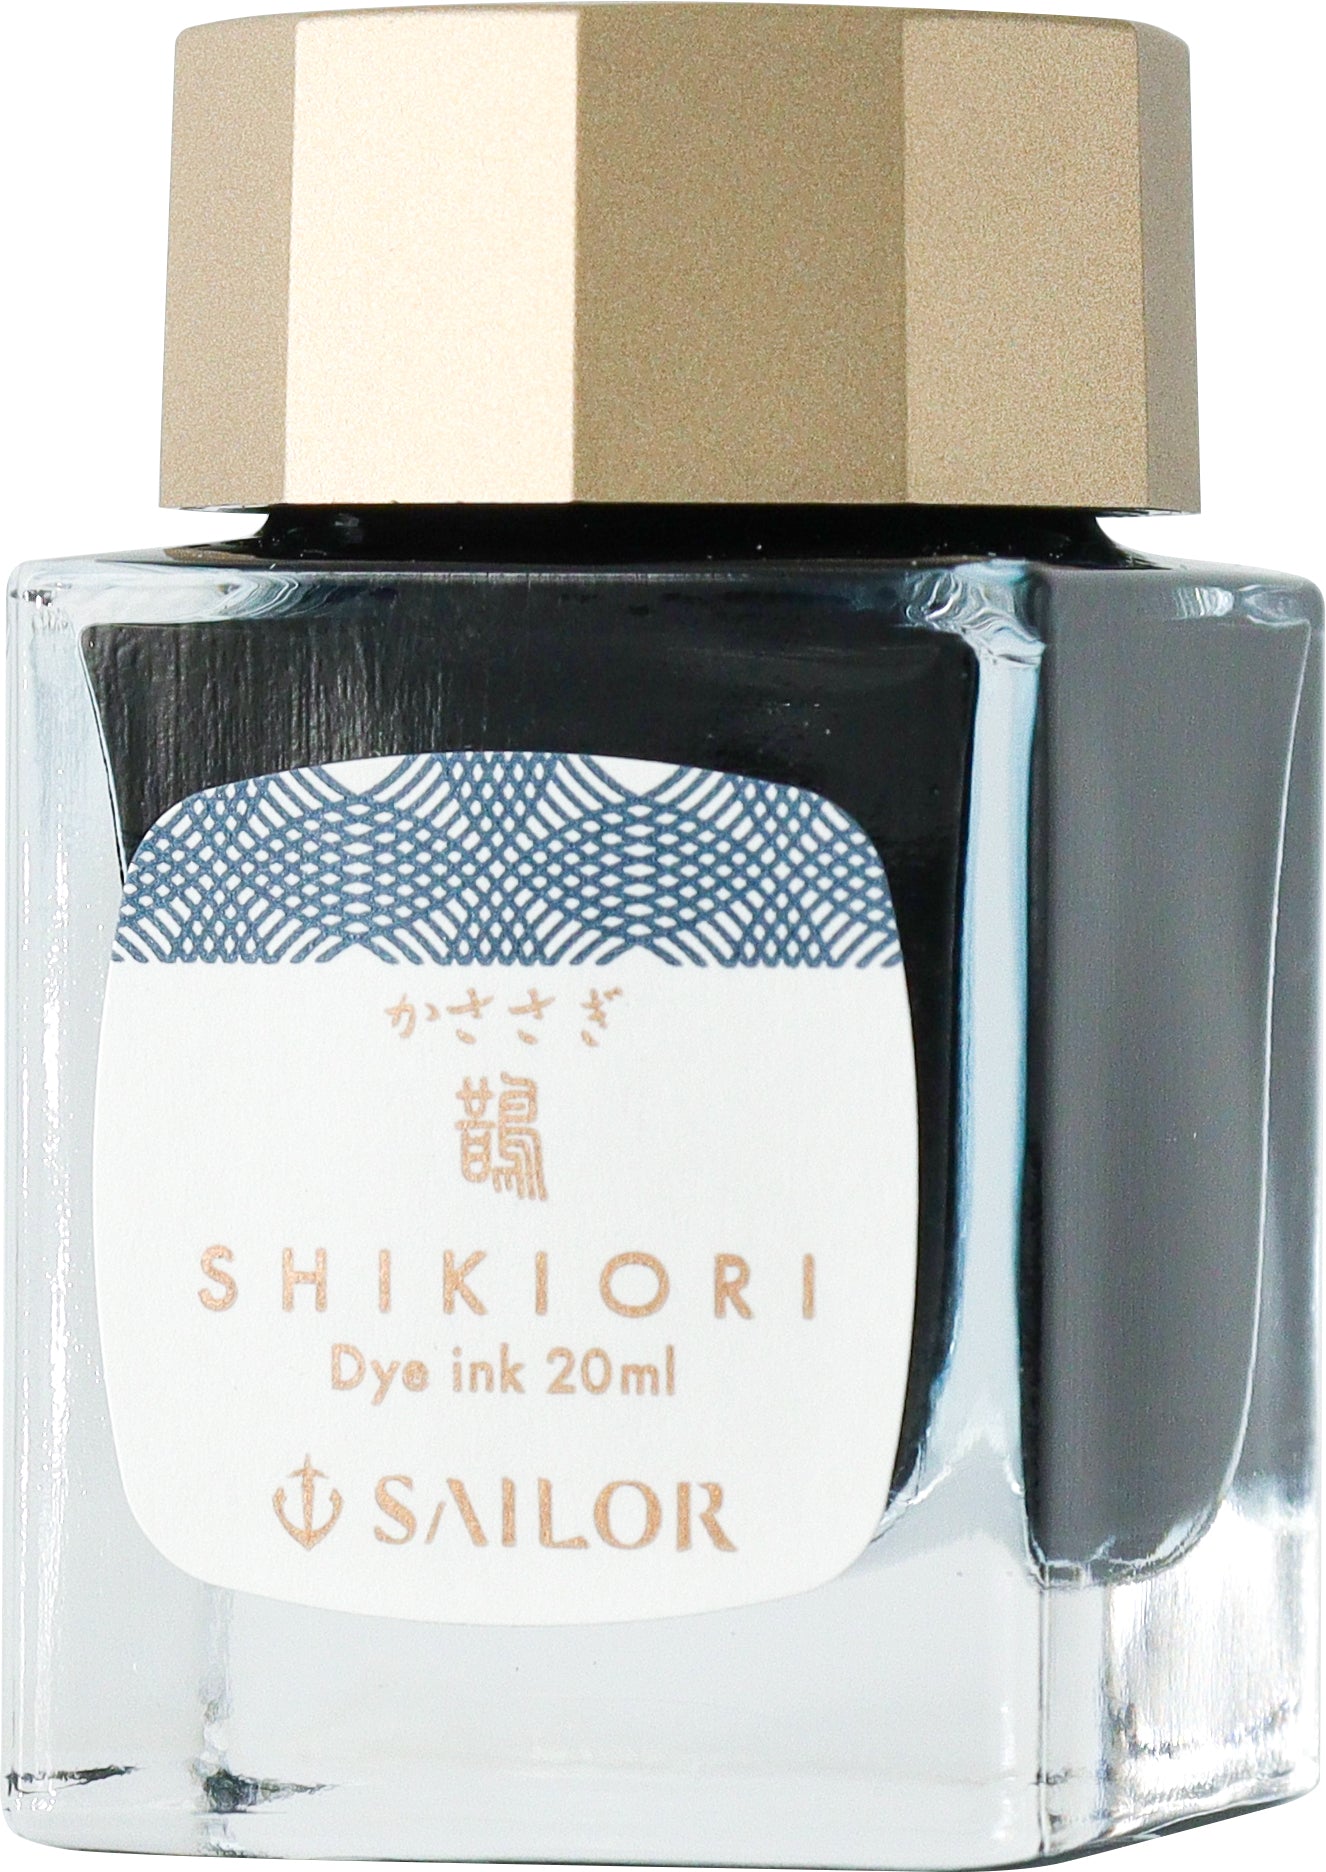 Sailor Shikiori Kasasagi (Magpies) - 20ml Bottled Ink